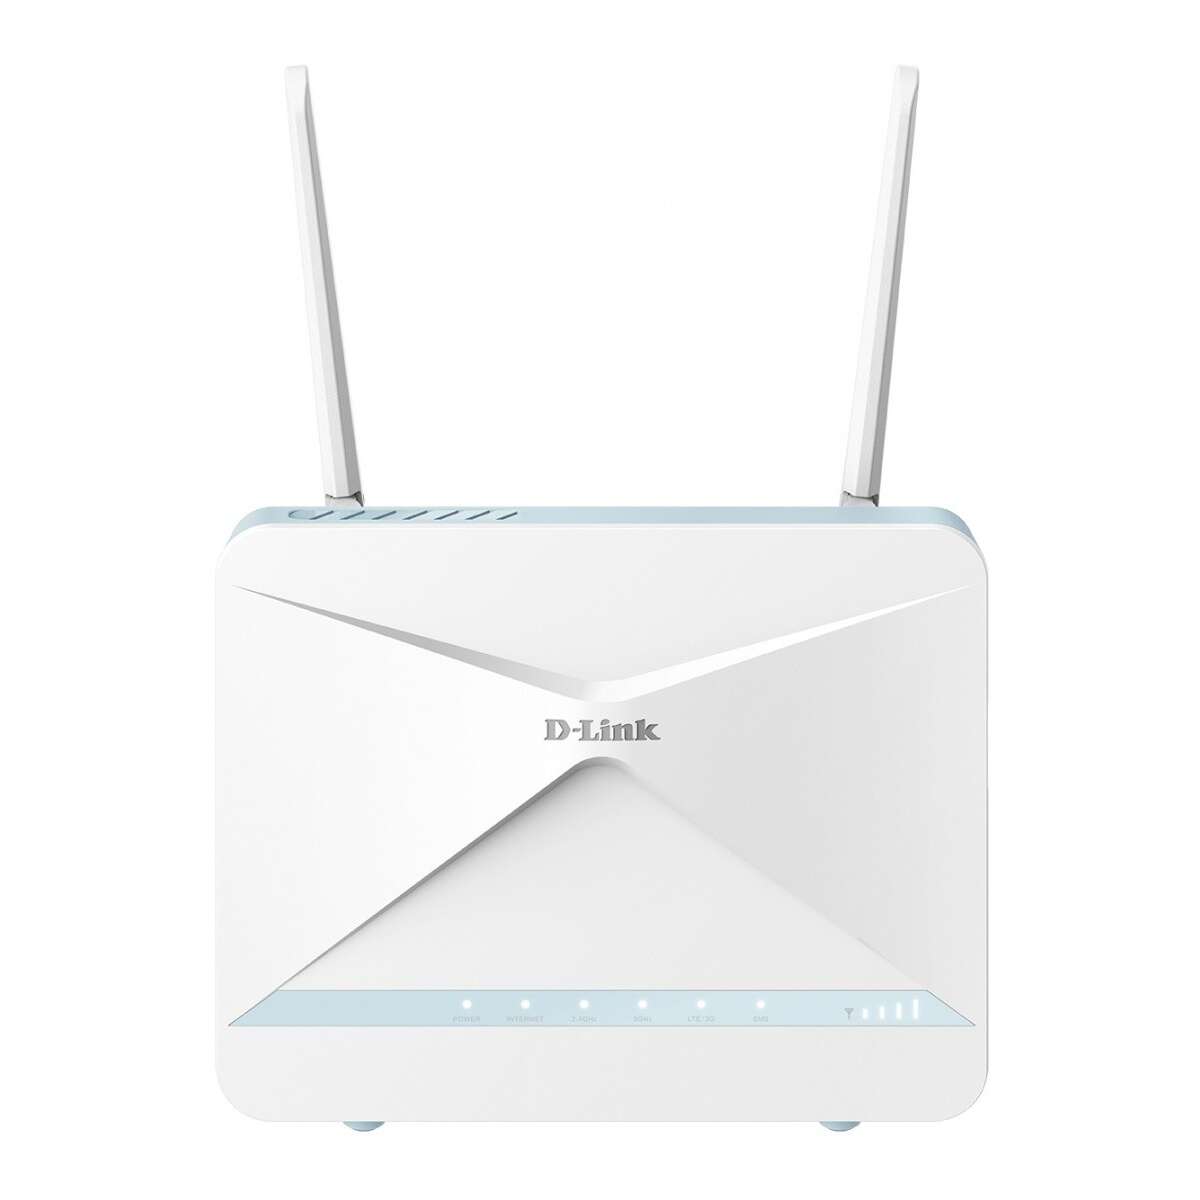 D-link g416 ax1500 4g router (g416/e)